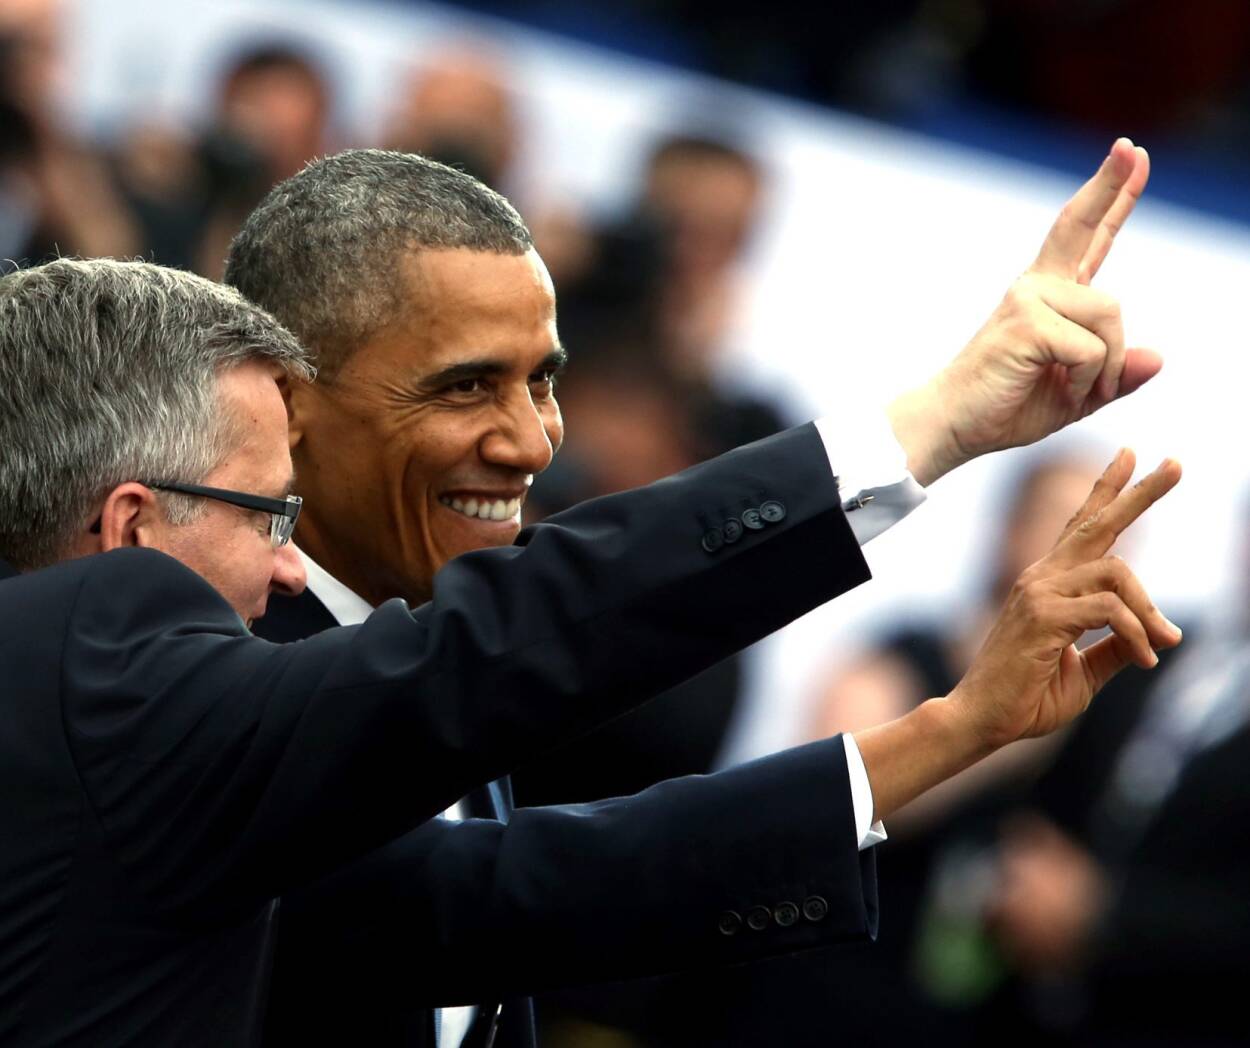  Prezydent RP Bronisław Komorowski i prezydent USA Barack Obama podczas głównych uroczystości z okazji 25-lecia Wolności w 25. rocznicę wyborów parlamentarnych w czerwcu 2014 r. na placu Zamkowym w Warszawie. Fot. PAP/Tomasz Gzell